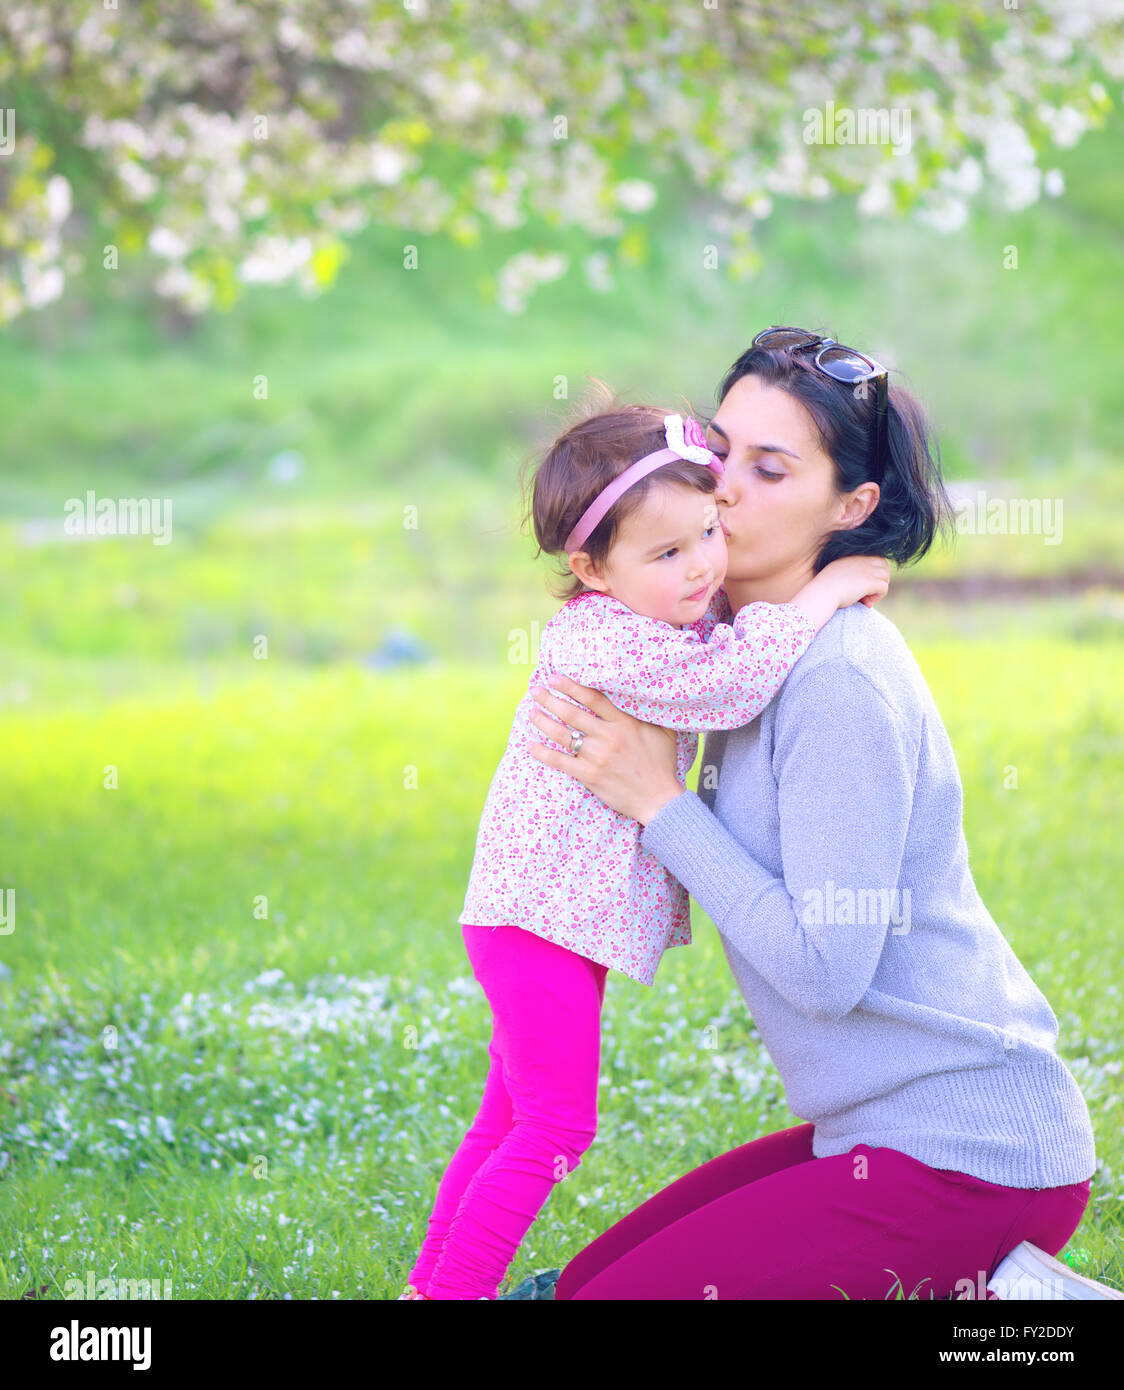 Familie, Kinder und glückliche Menschen Konzept - glückliches kleines Mädchen umarmen und küssen ihre Mutter auf grünem Hintergrund Stockfoto